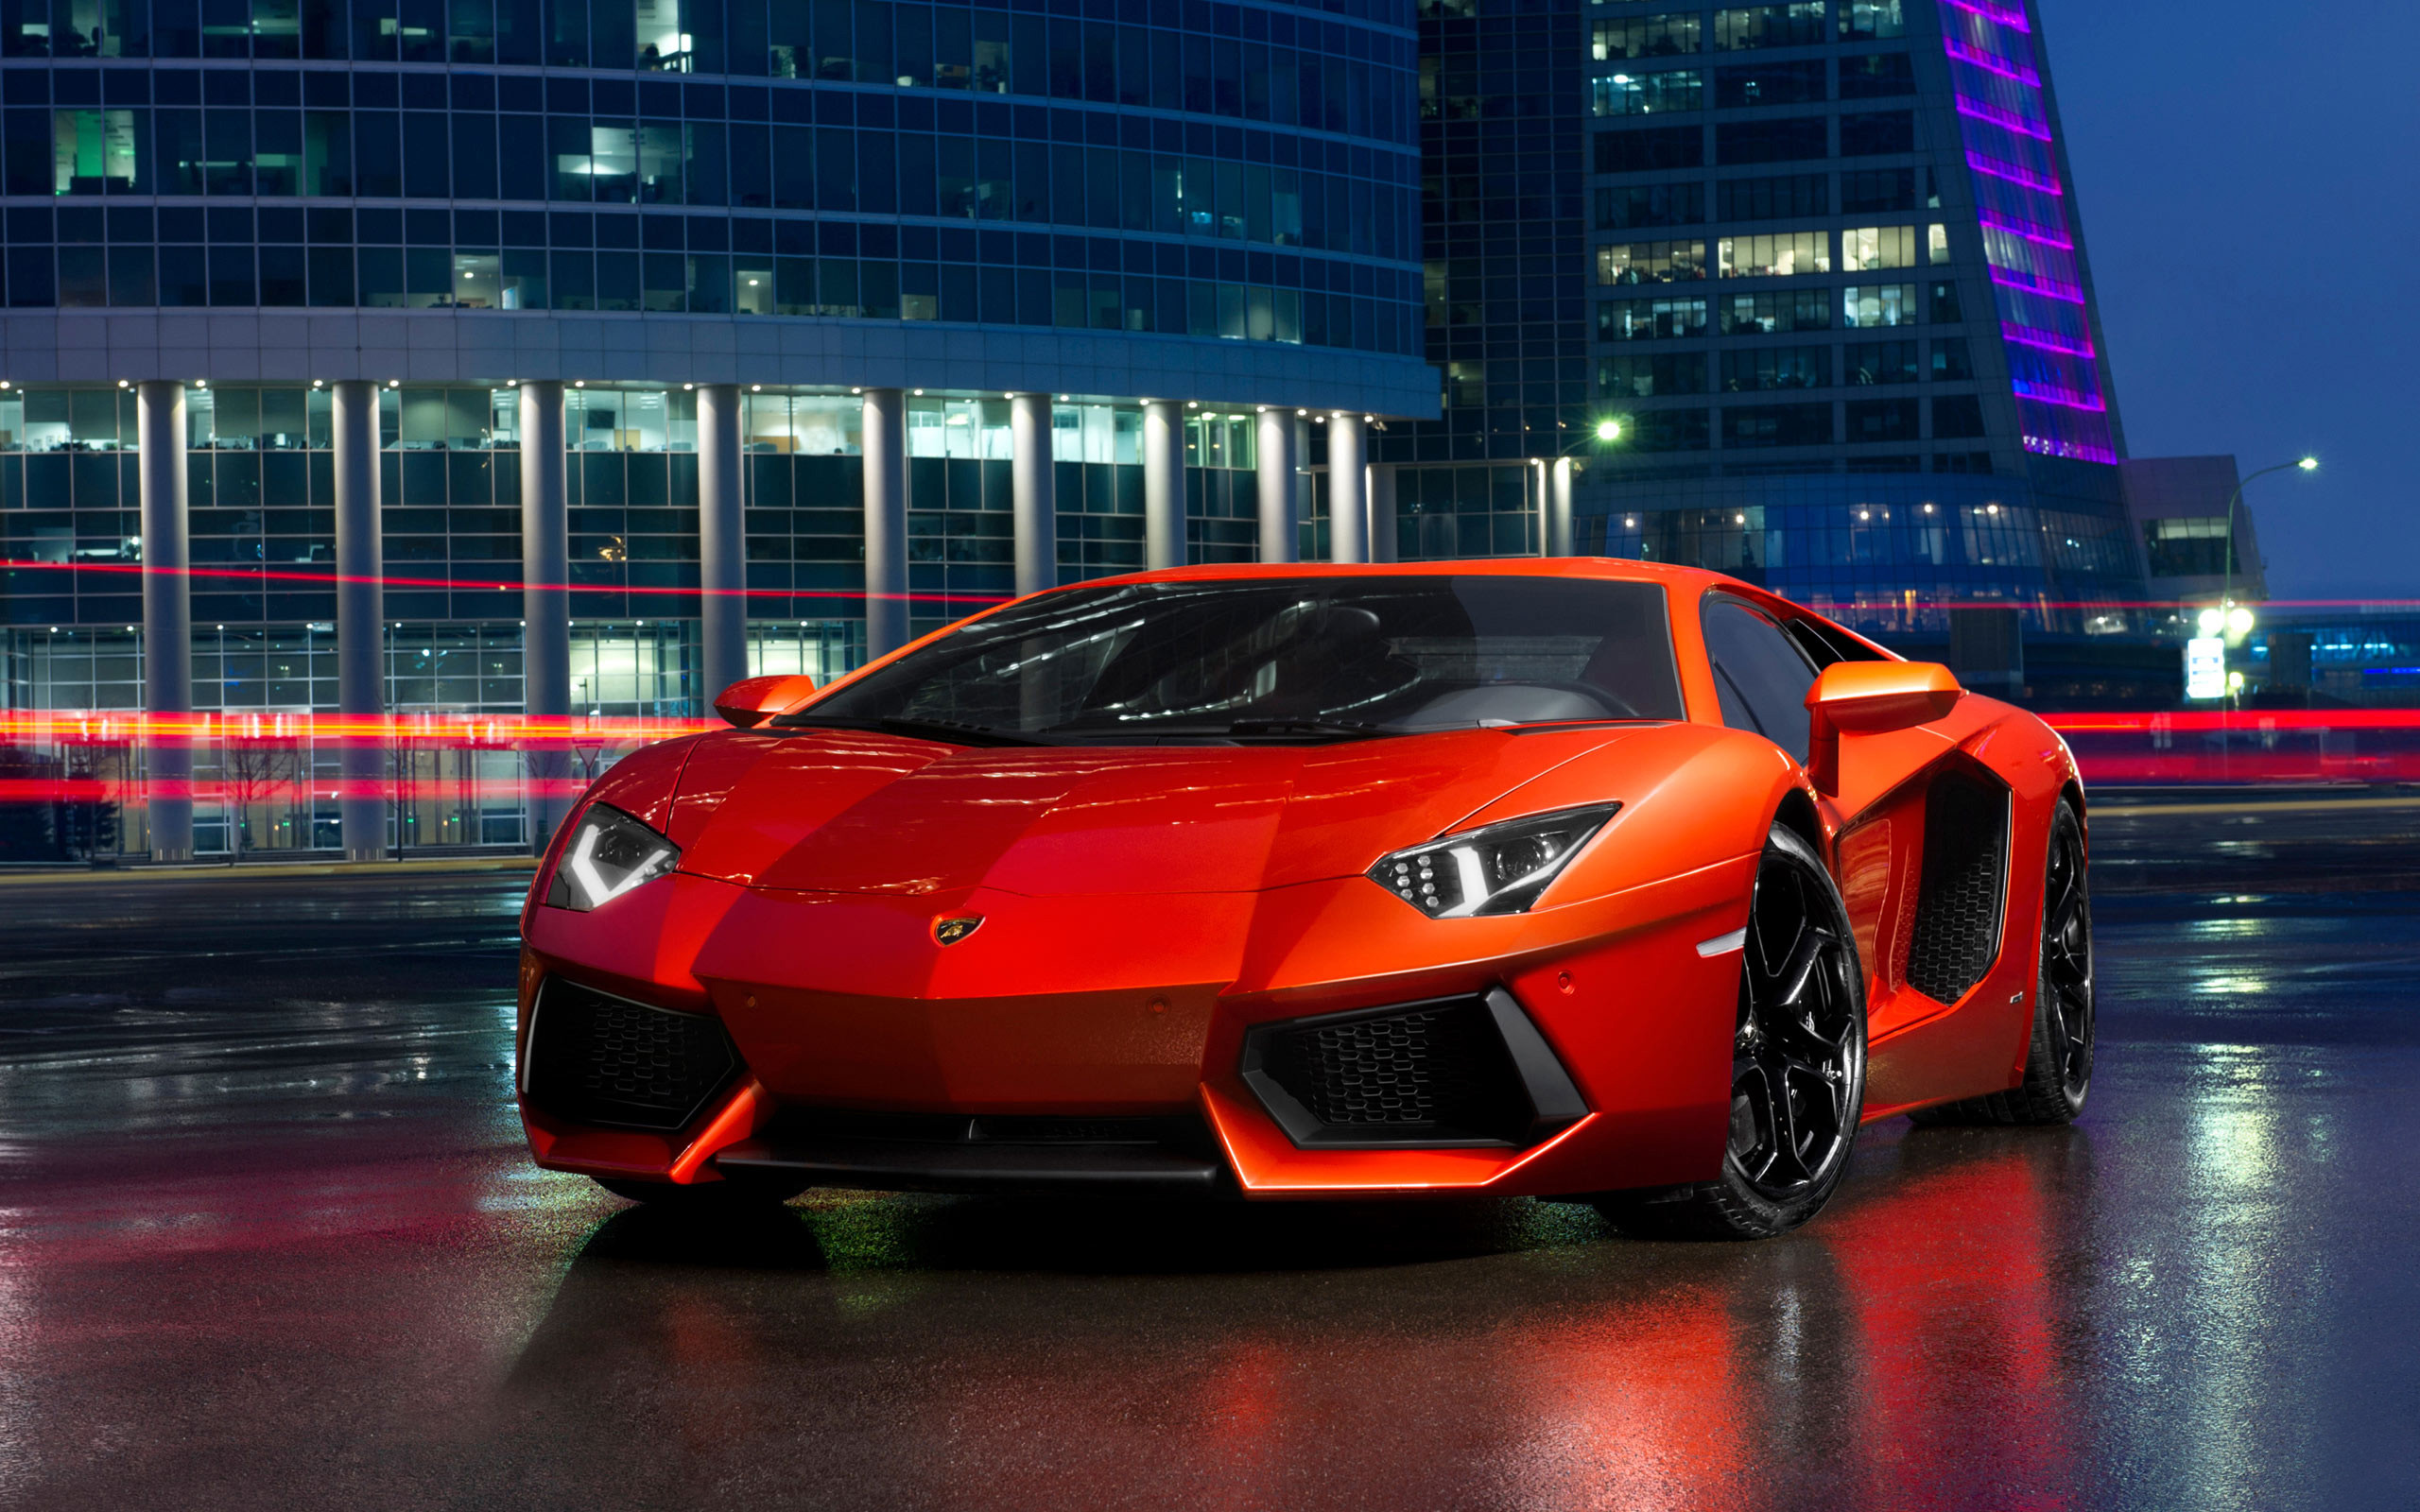 Hình nền Lamborghini đại diện cho một phong cách táo bạo và săn chắc. Hãy chiêm ngưỡng chiếc xe đường phố đầy mê hoặc với hình ảnh Lamborghini để thấy rõ sự khác biệt và đẳng cấp của nó.